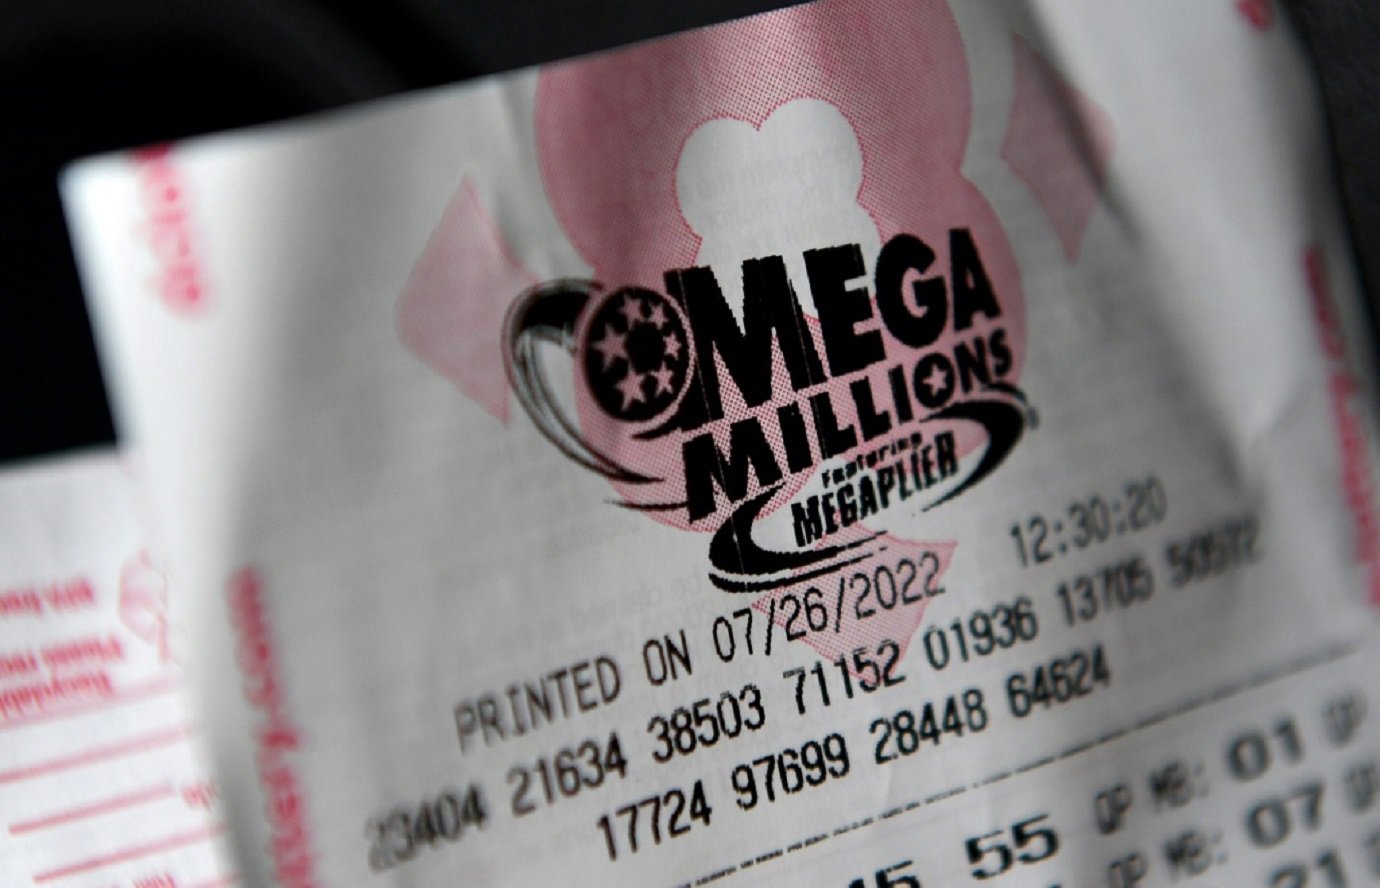 Um bilhete de loteria Mega Millions em Washington, em 26 de julho de 2022

